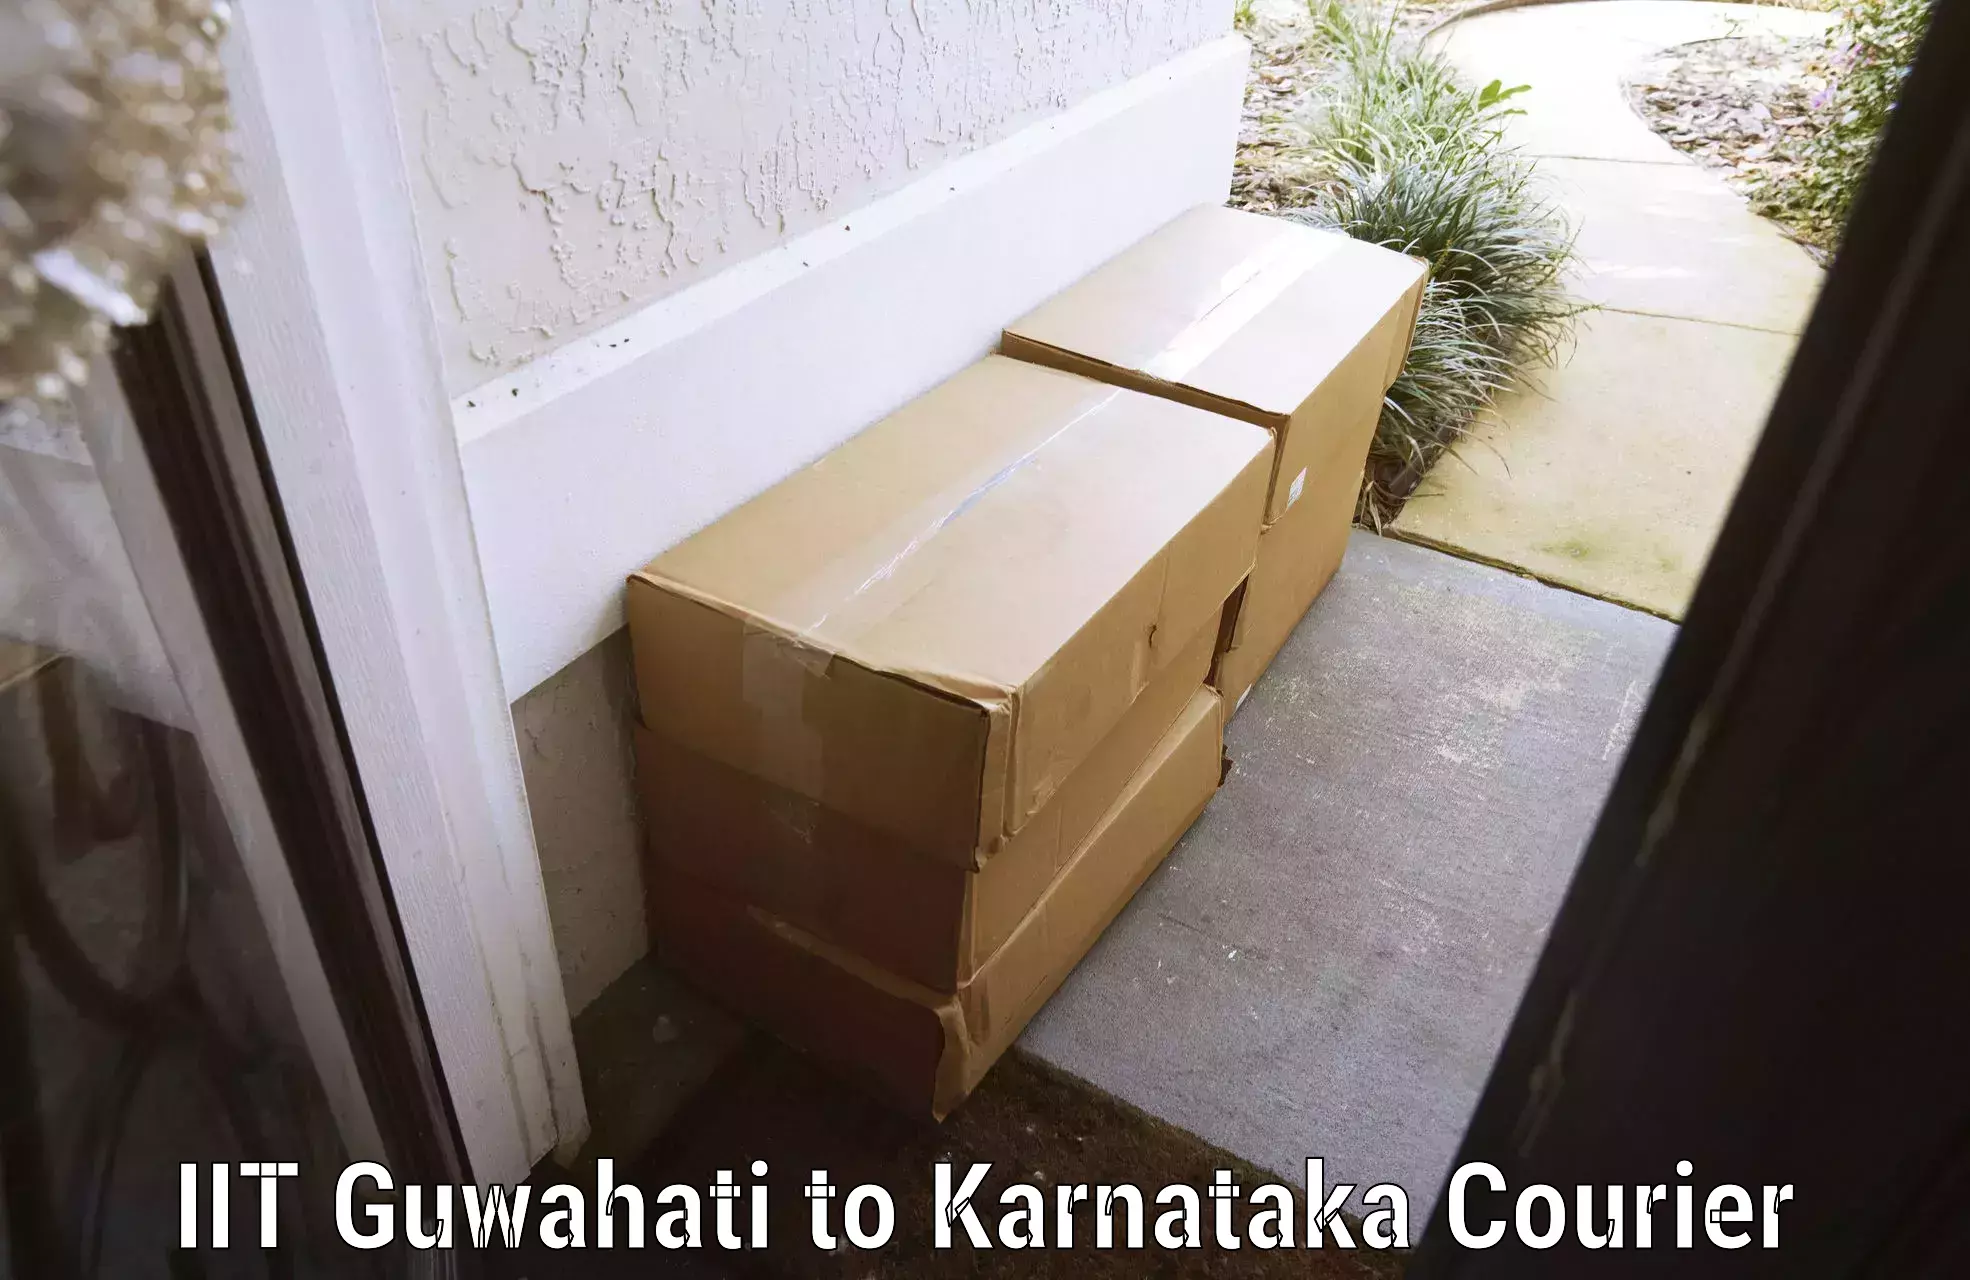 Luggage delivery providers IIT Guwahati to Kanakapura